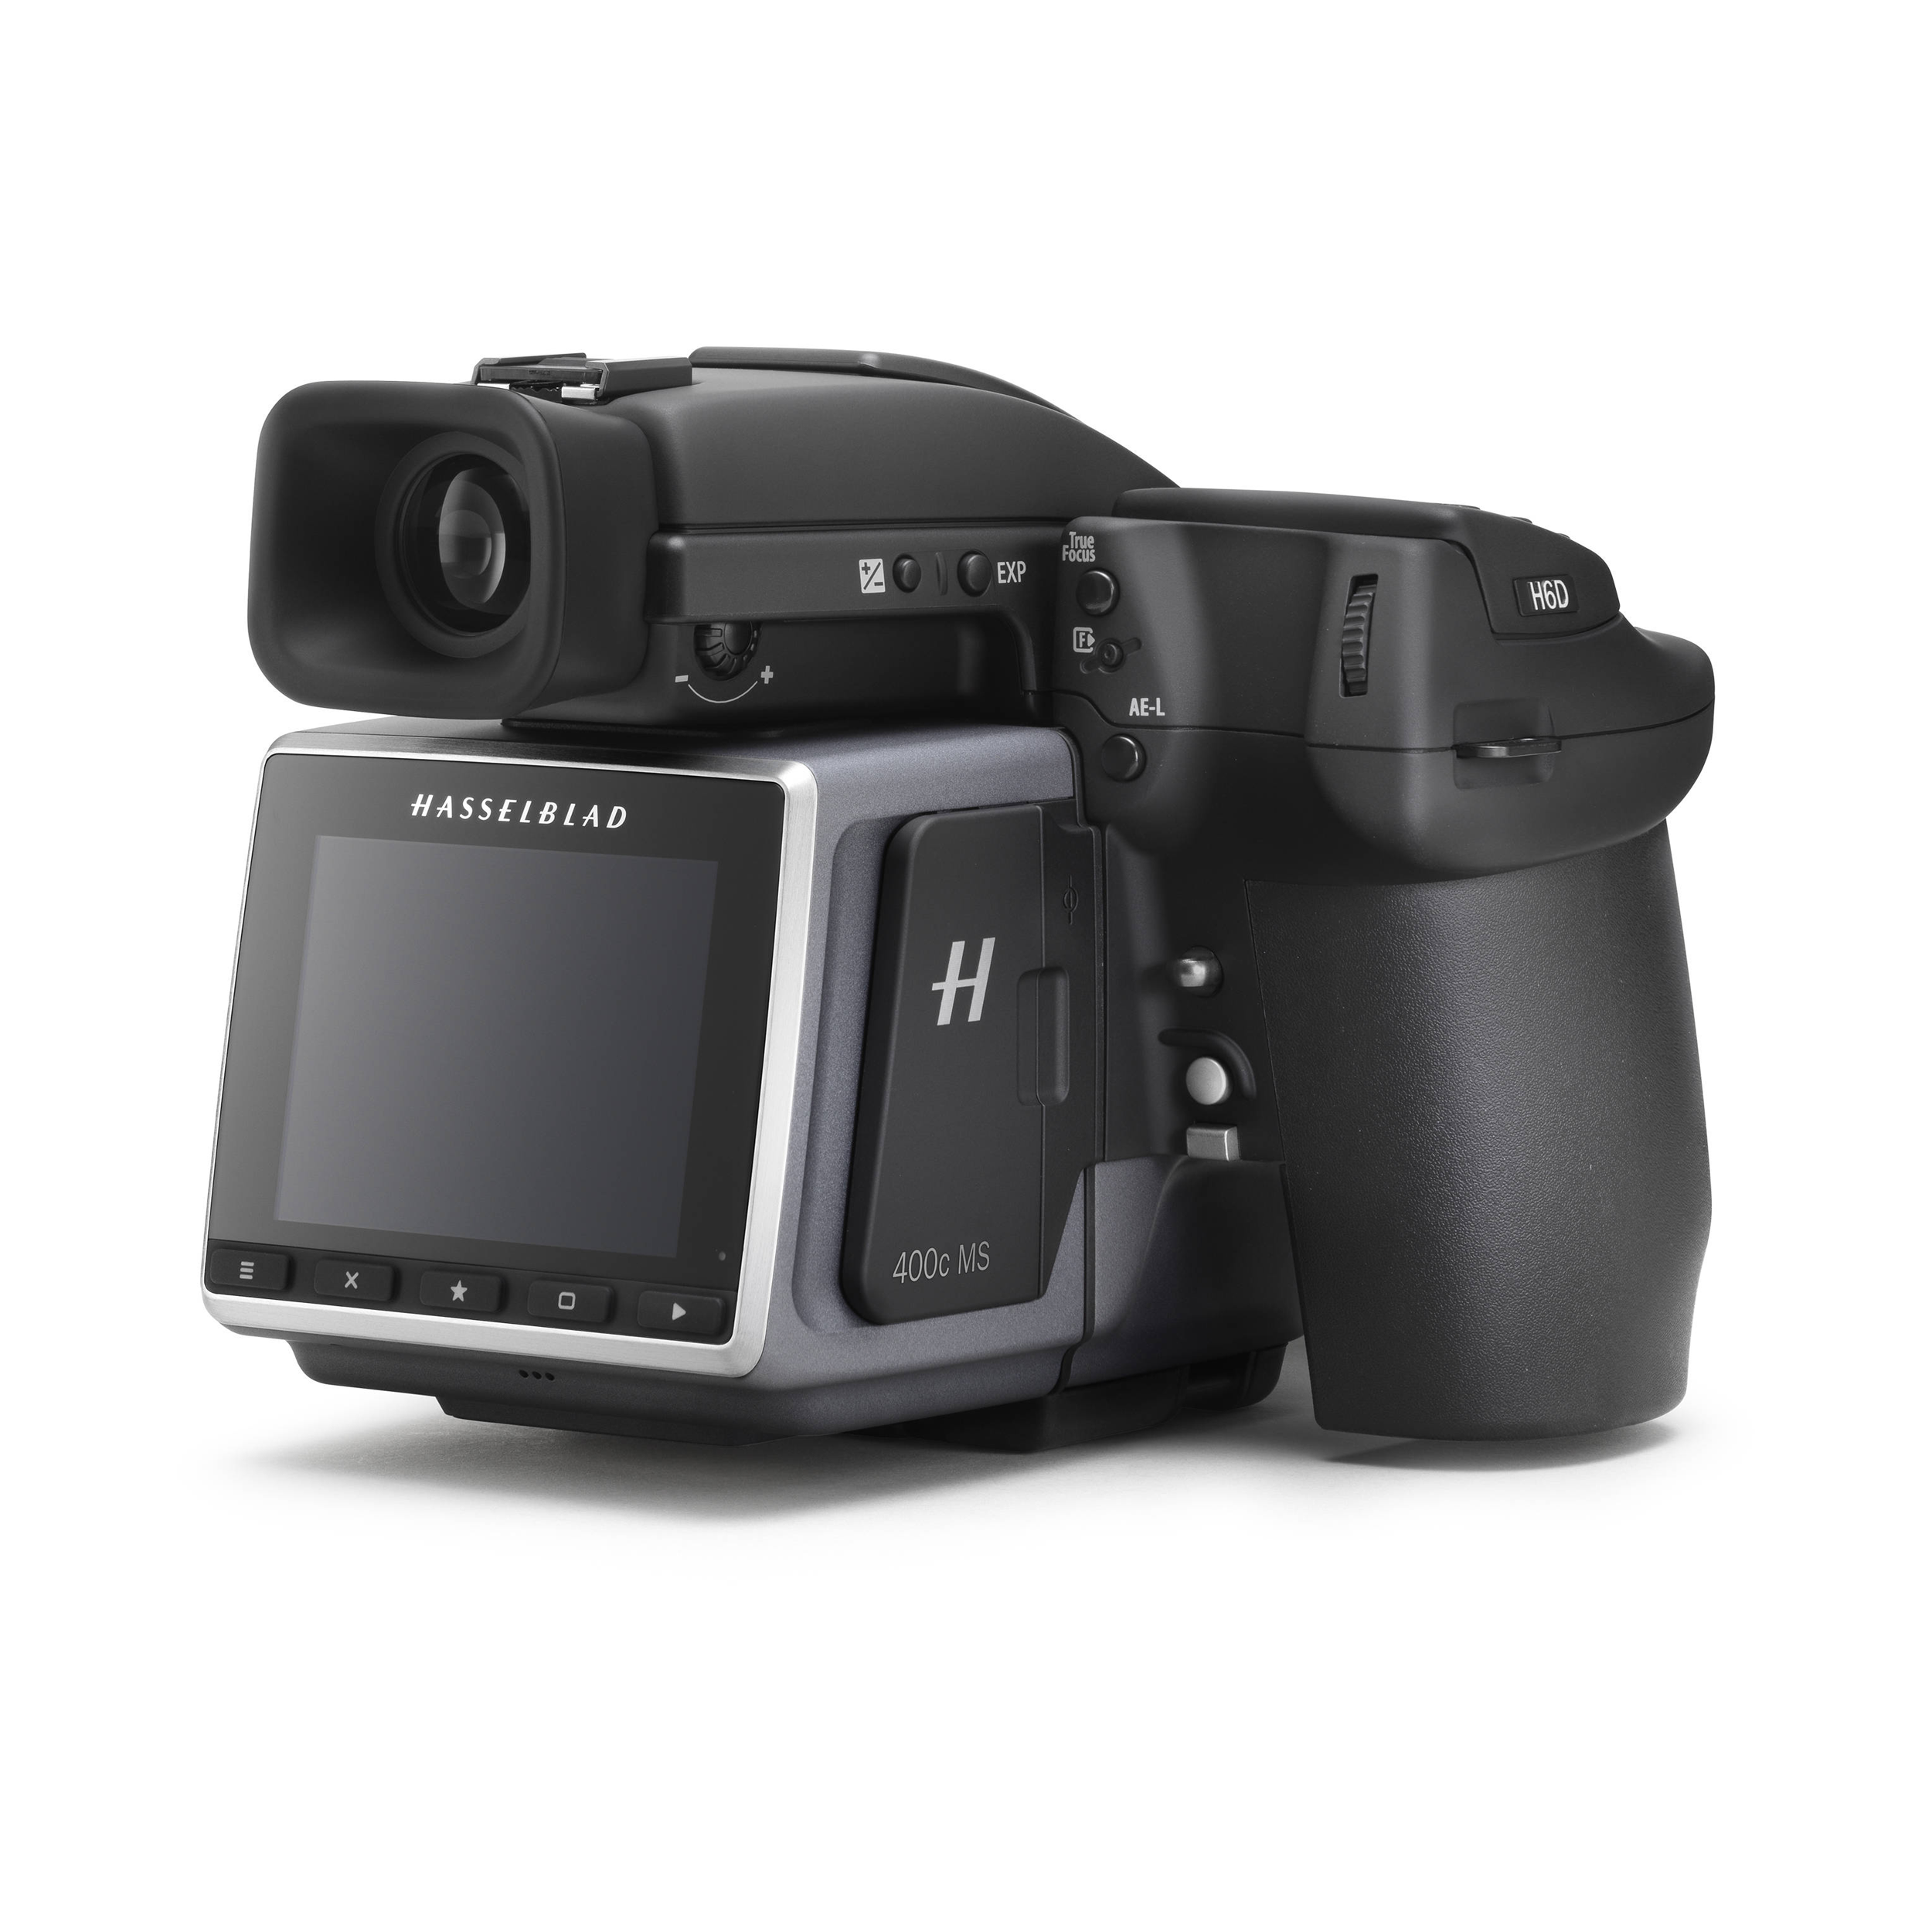 Caméra dslr du format moyen Hasselblad H6D-400C MS